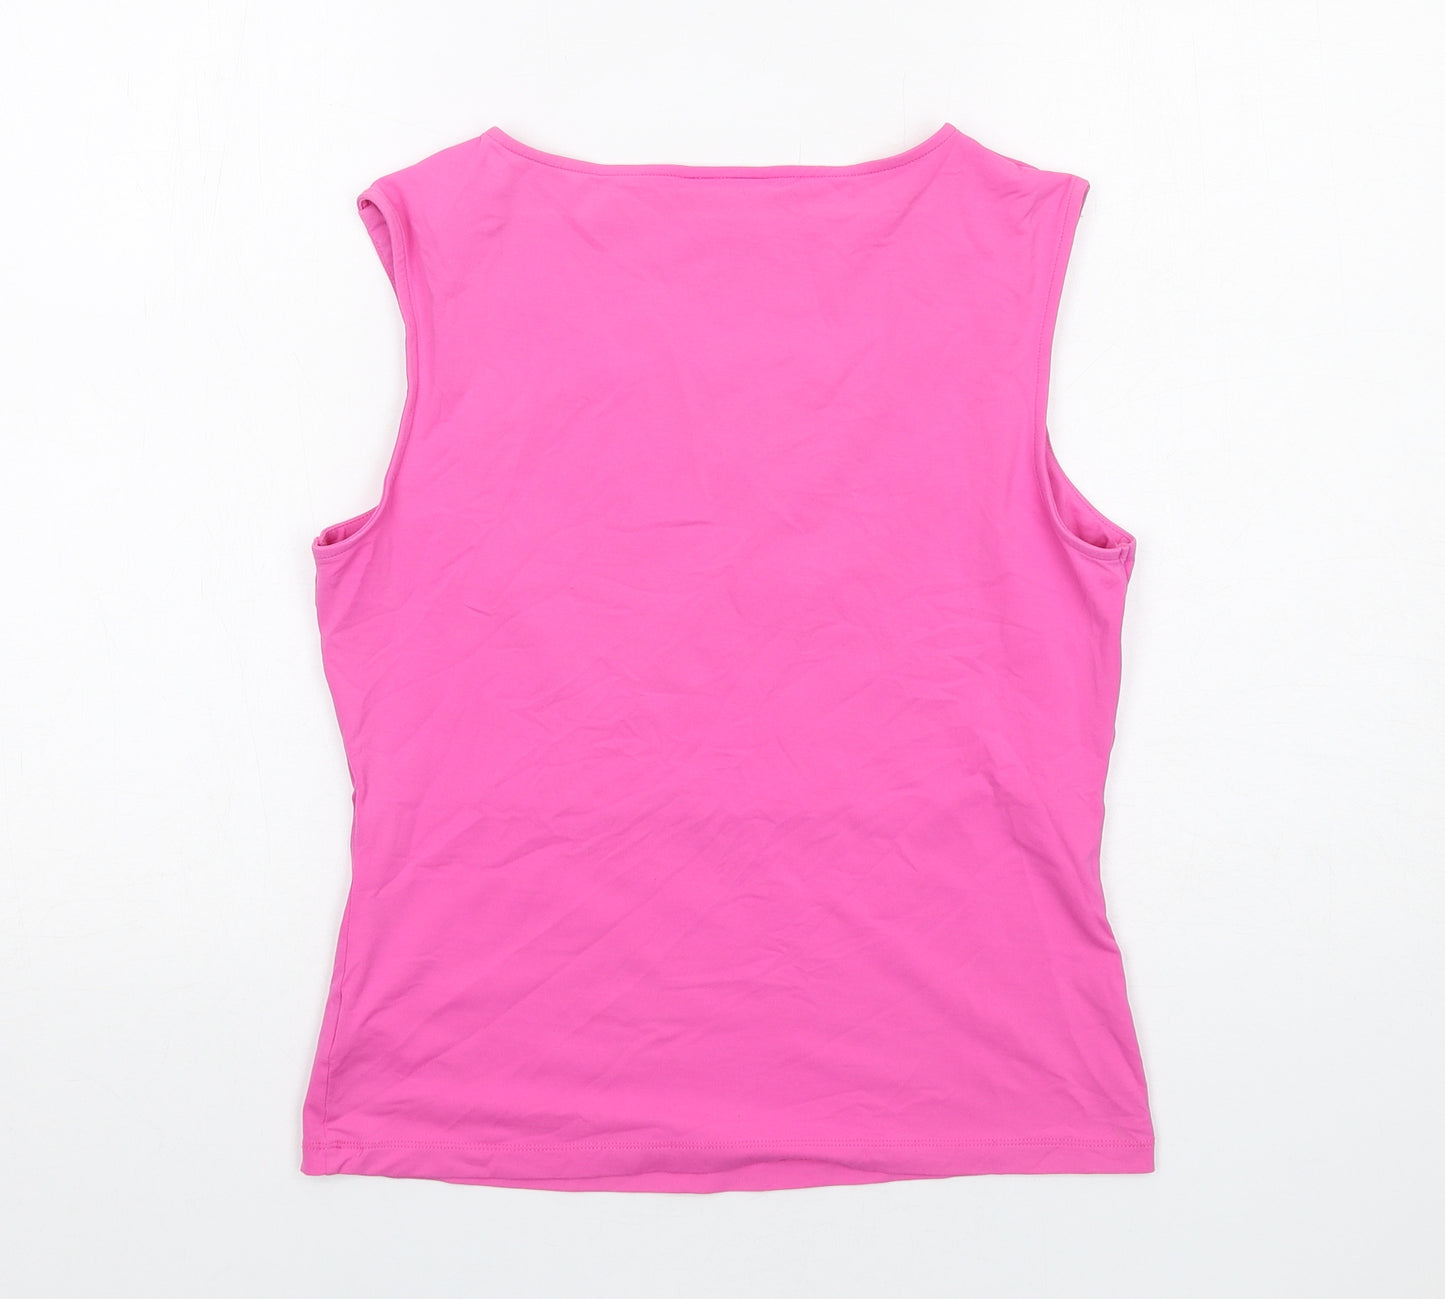 NEXT Womens Pink Nylon Basic Tank Size 14 V-Neck